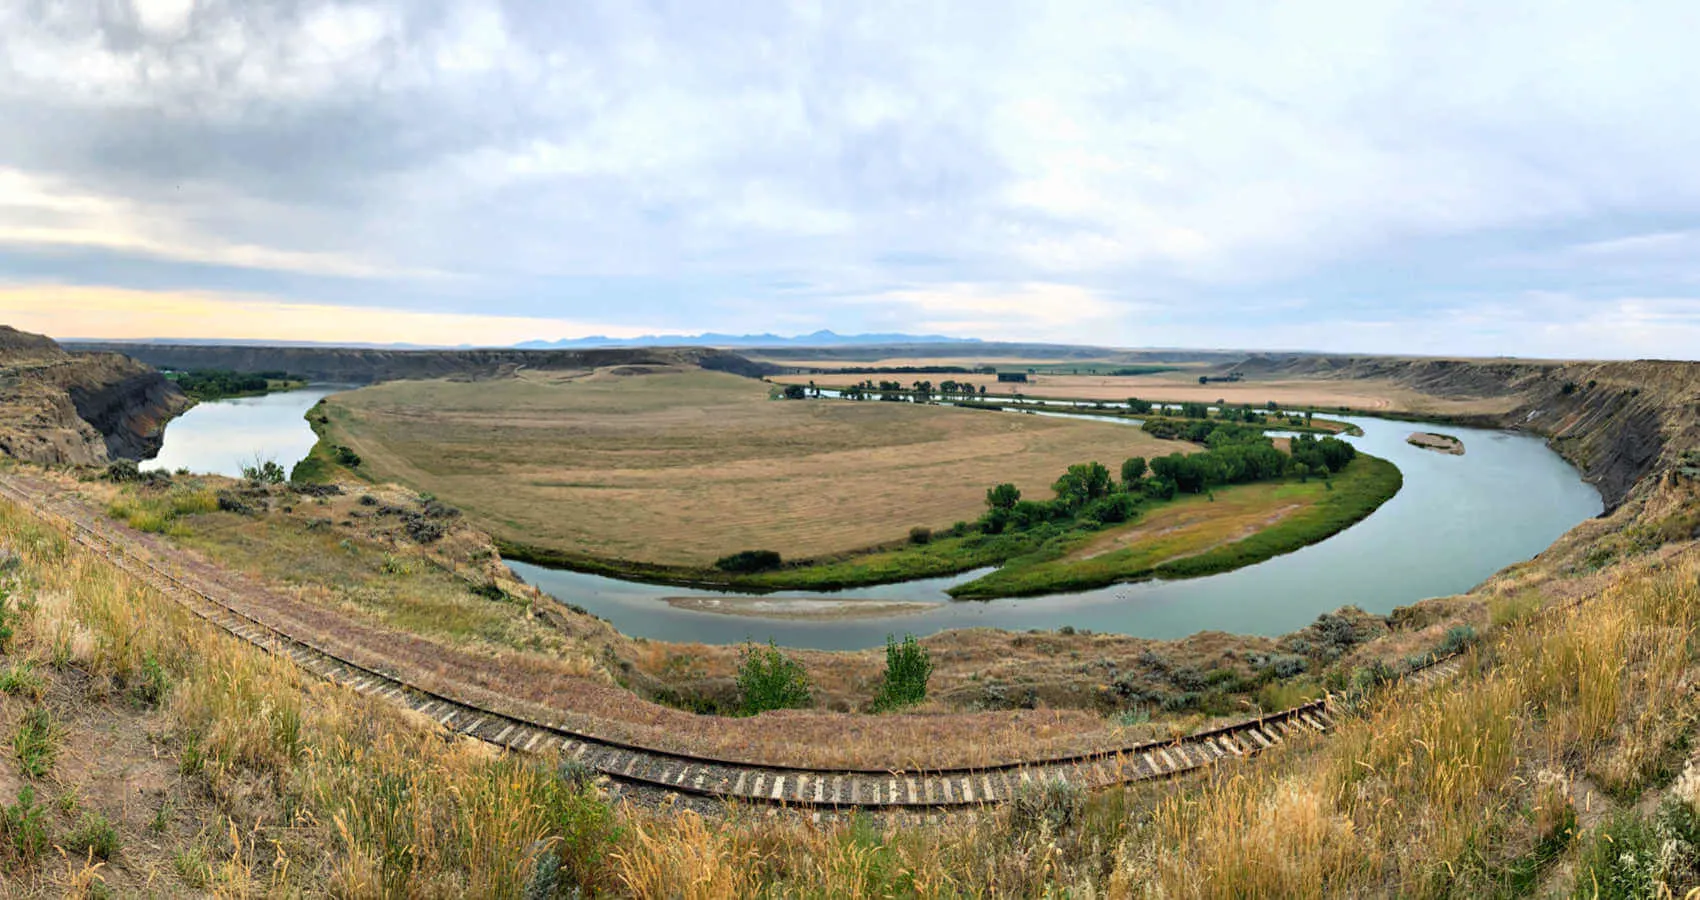 Scenic overlook outside Fort Benton, Montana, Highway 87